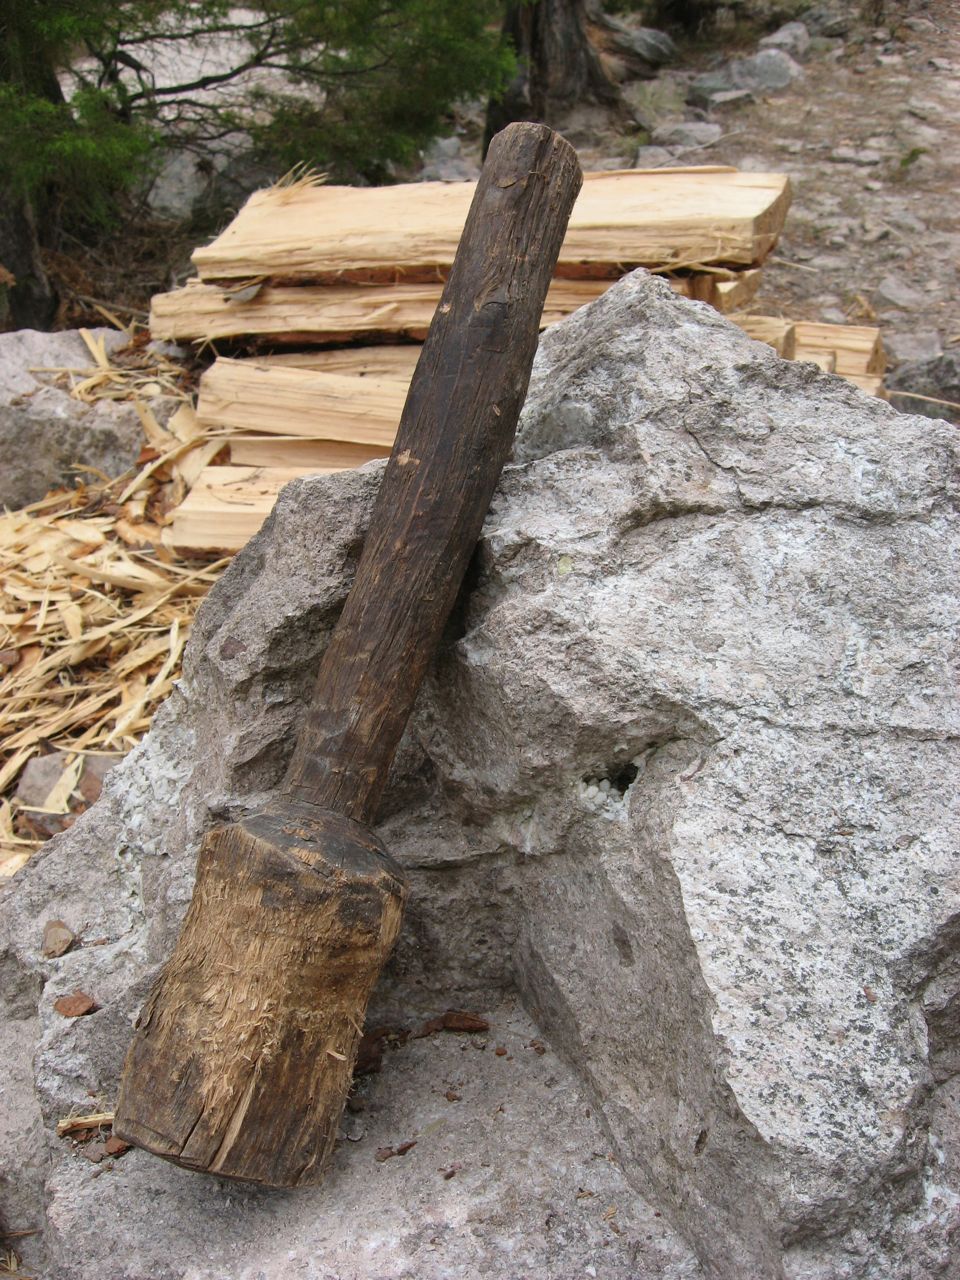 Soft cedar shingles are split with a fire hardened oak wedge.